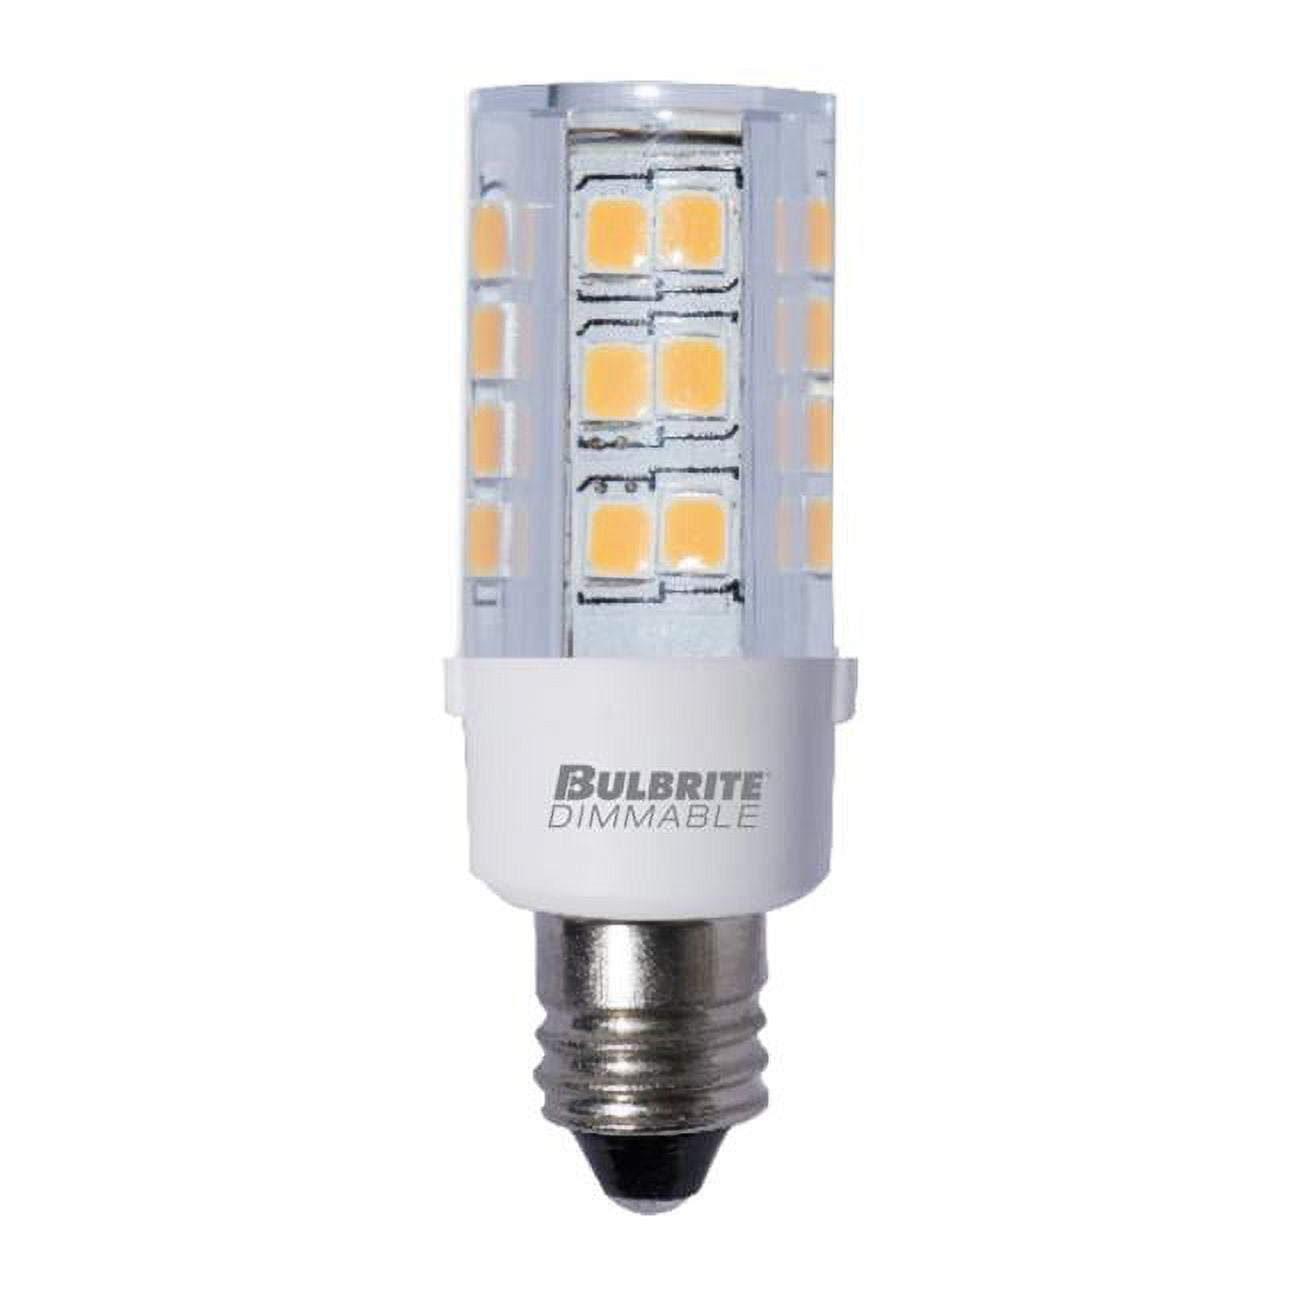 Picture of Bulbrite Pack of (2) 4.5 Watt 120V Dimmable Clear T4 LED Mini Light Bulbs with Candelabra (E12) Base  3000K Soft White Light  400 Lumens